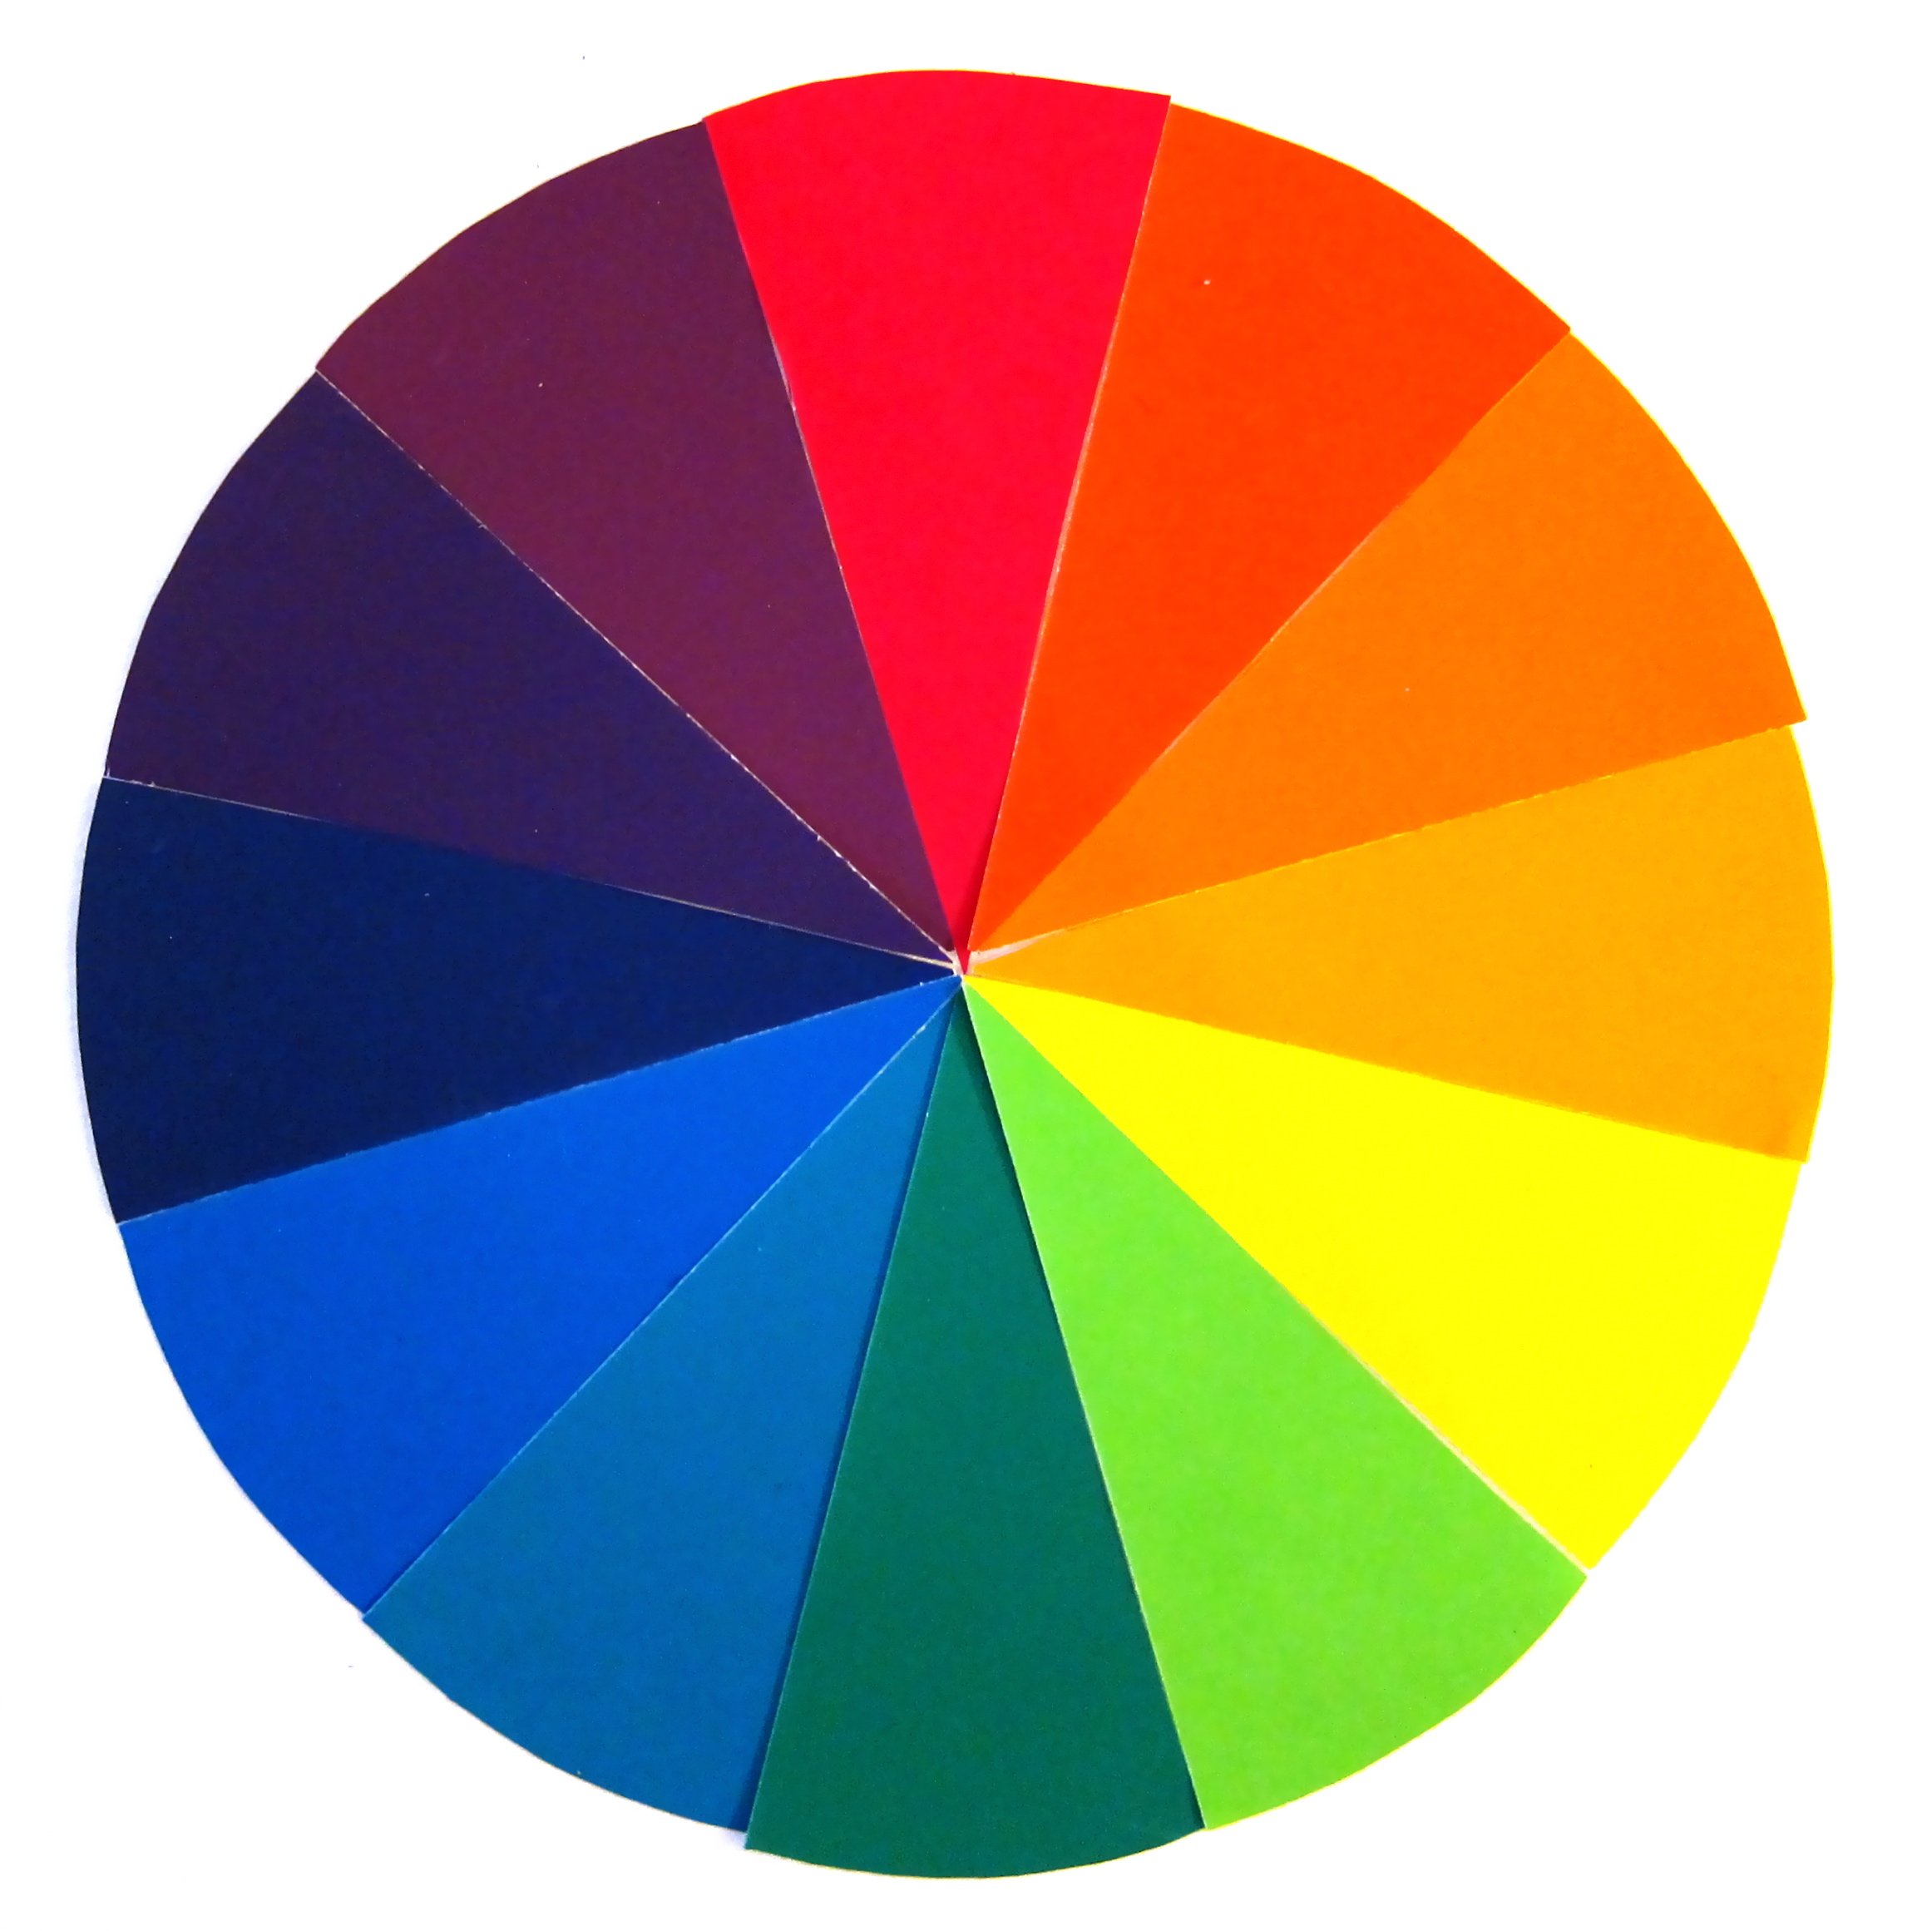 Цветогамма. Цветовой круг Иттена 12 цветов. Цветовой спектр Иттена. Круг цветовой гаммы. Спектр круг Иттена.